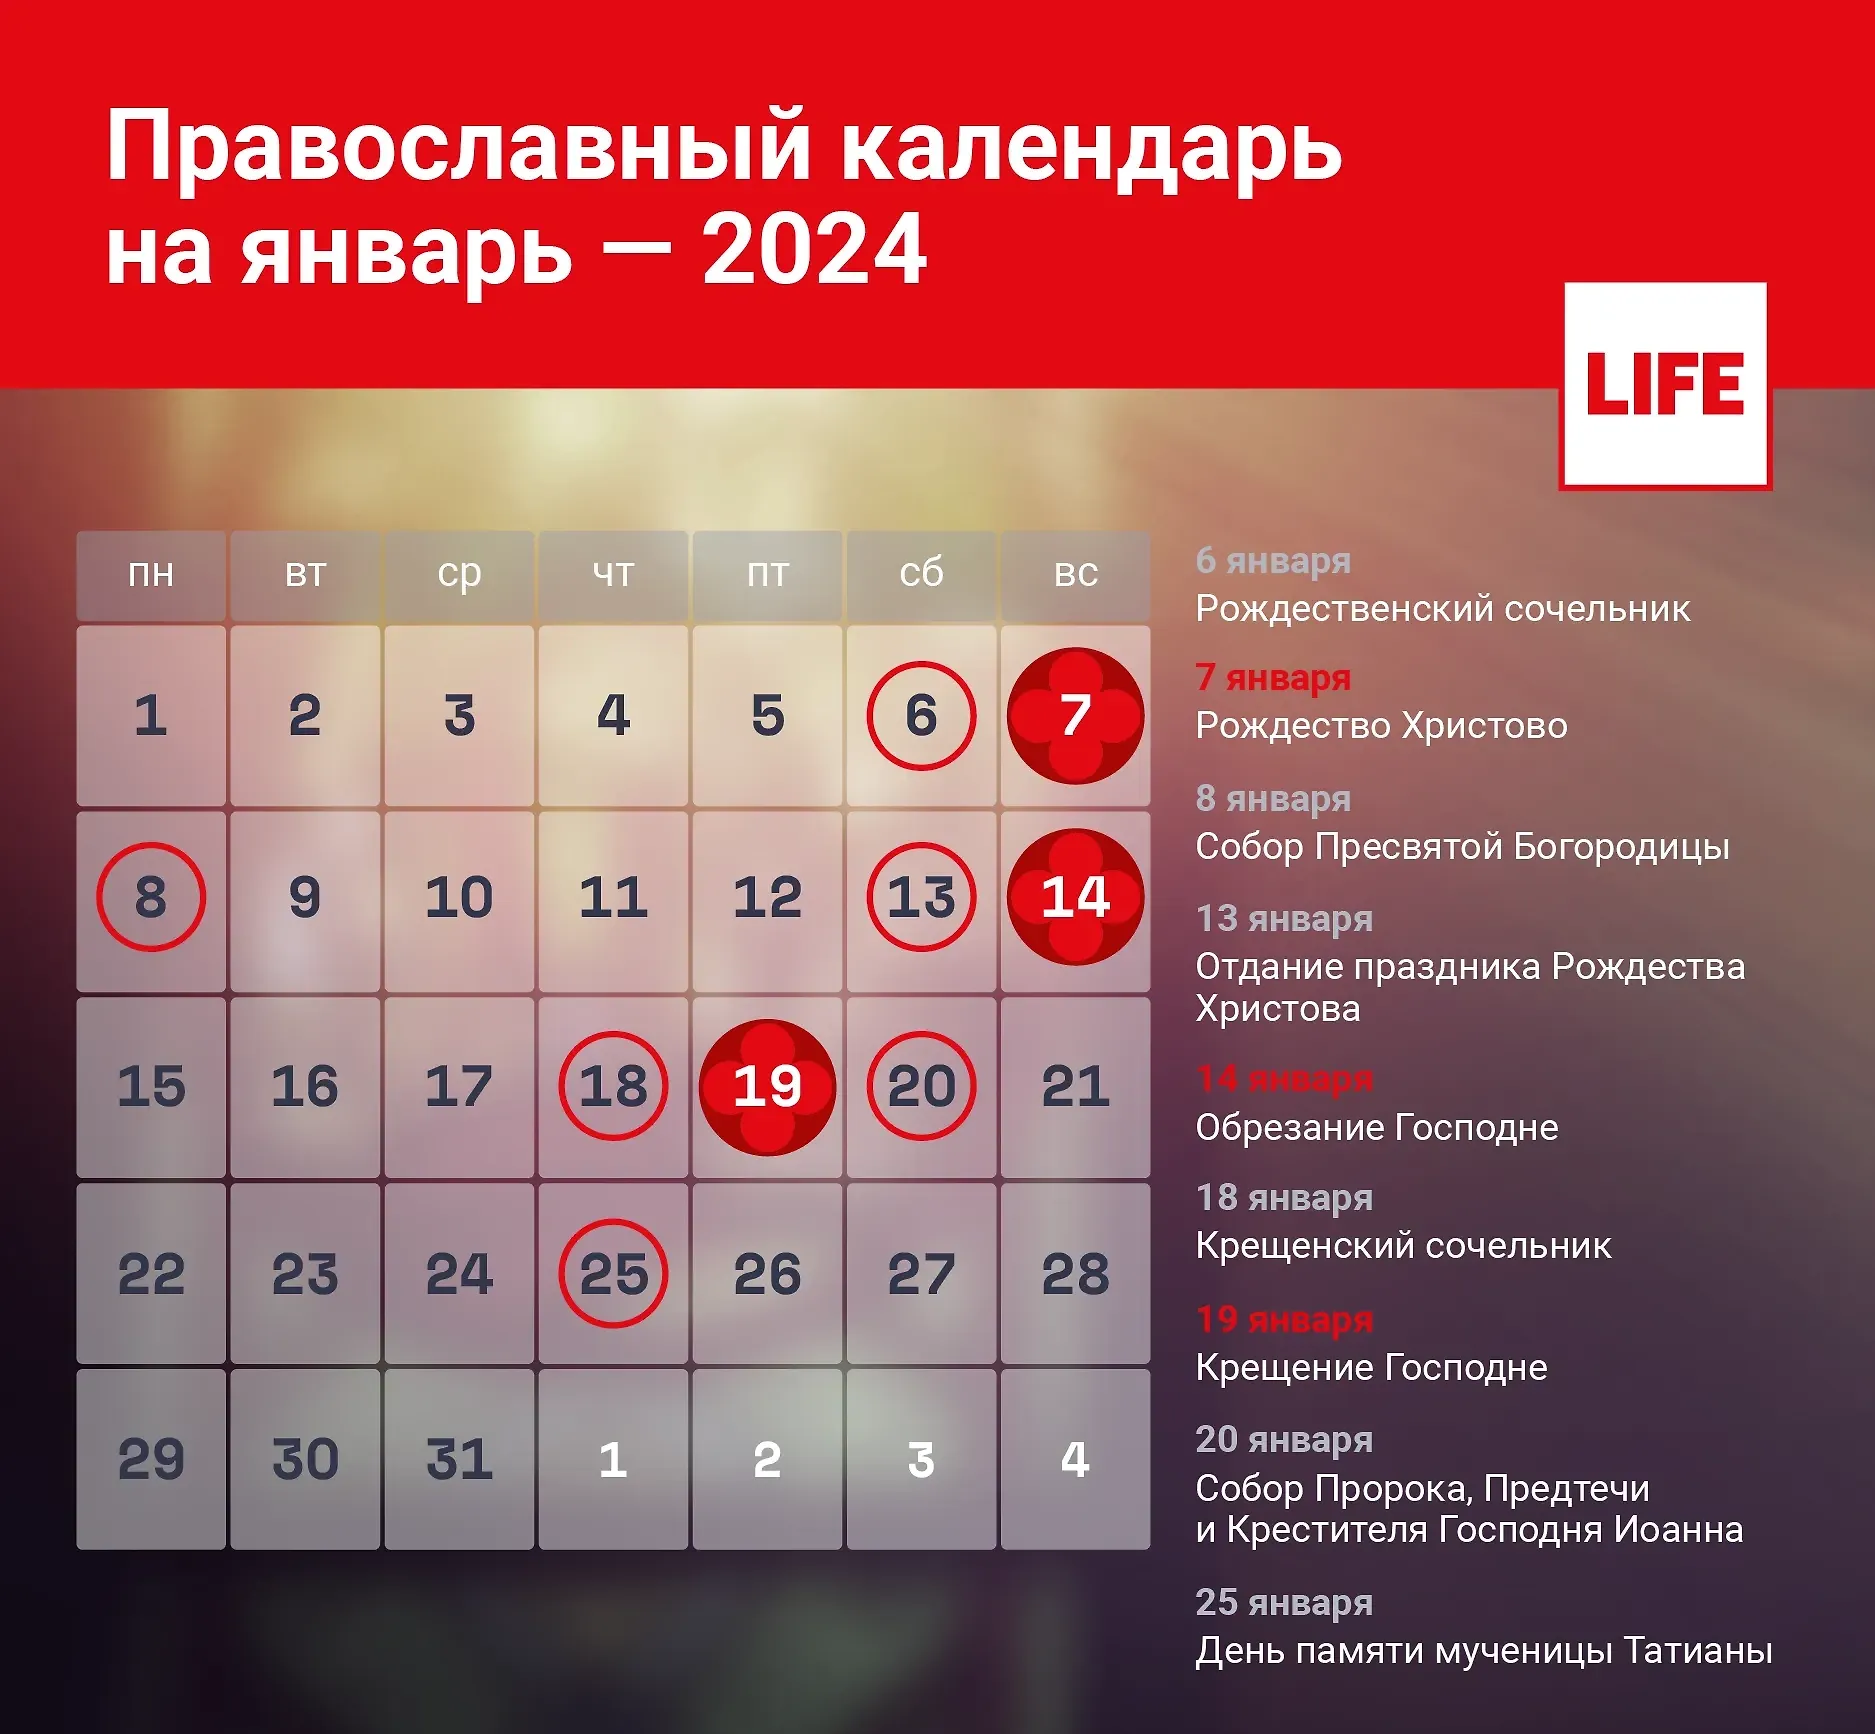 именины татьяны по православному календарю в 2024